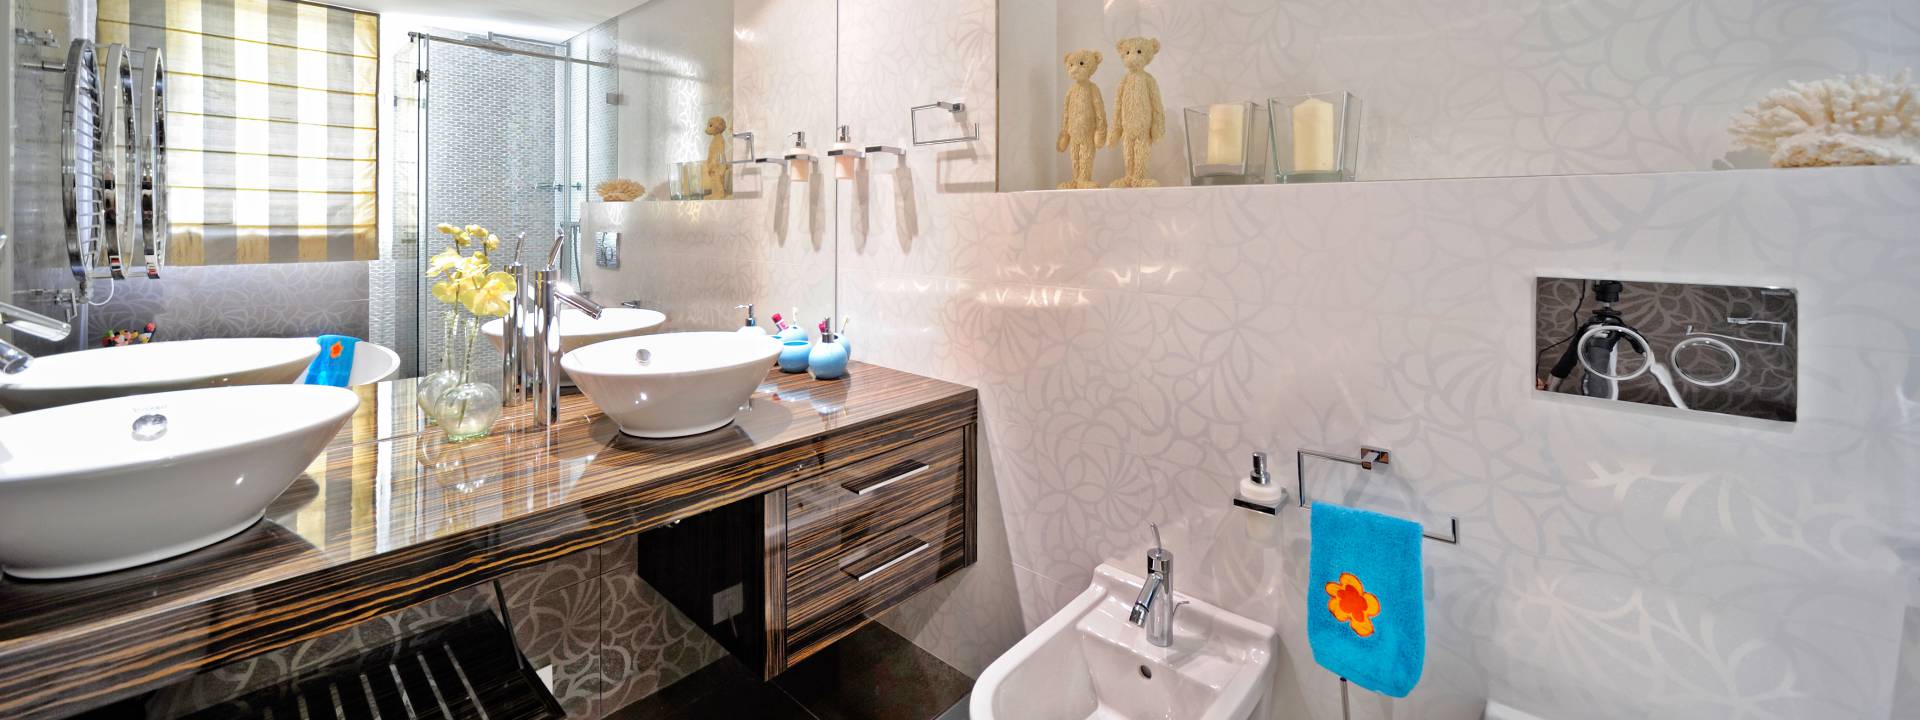 Luxury Contemporary Bathroom